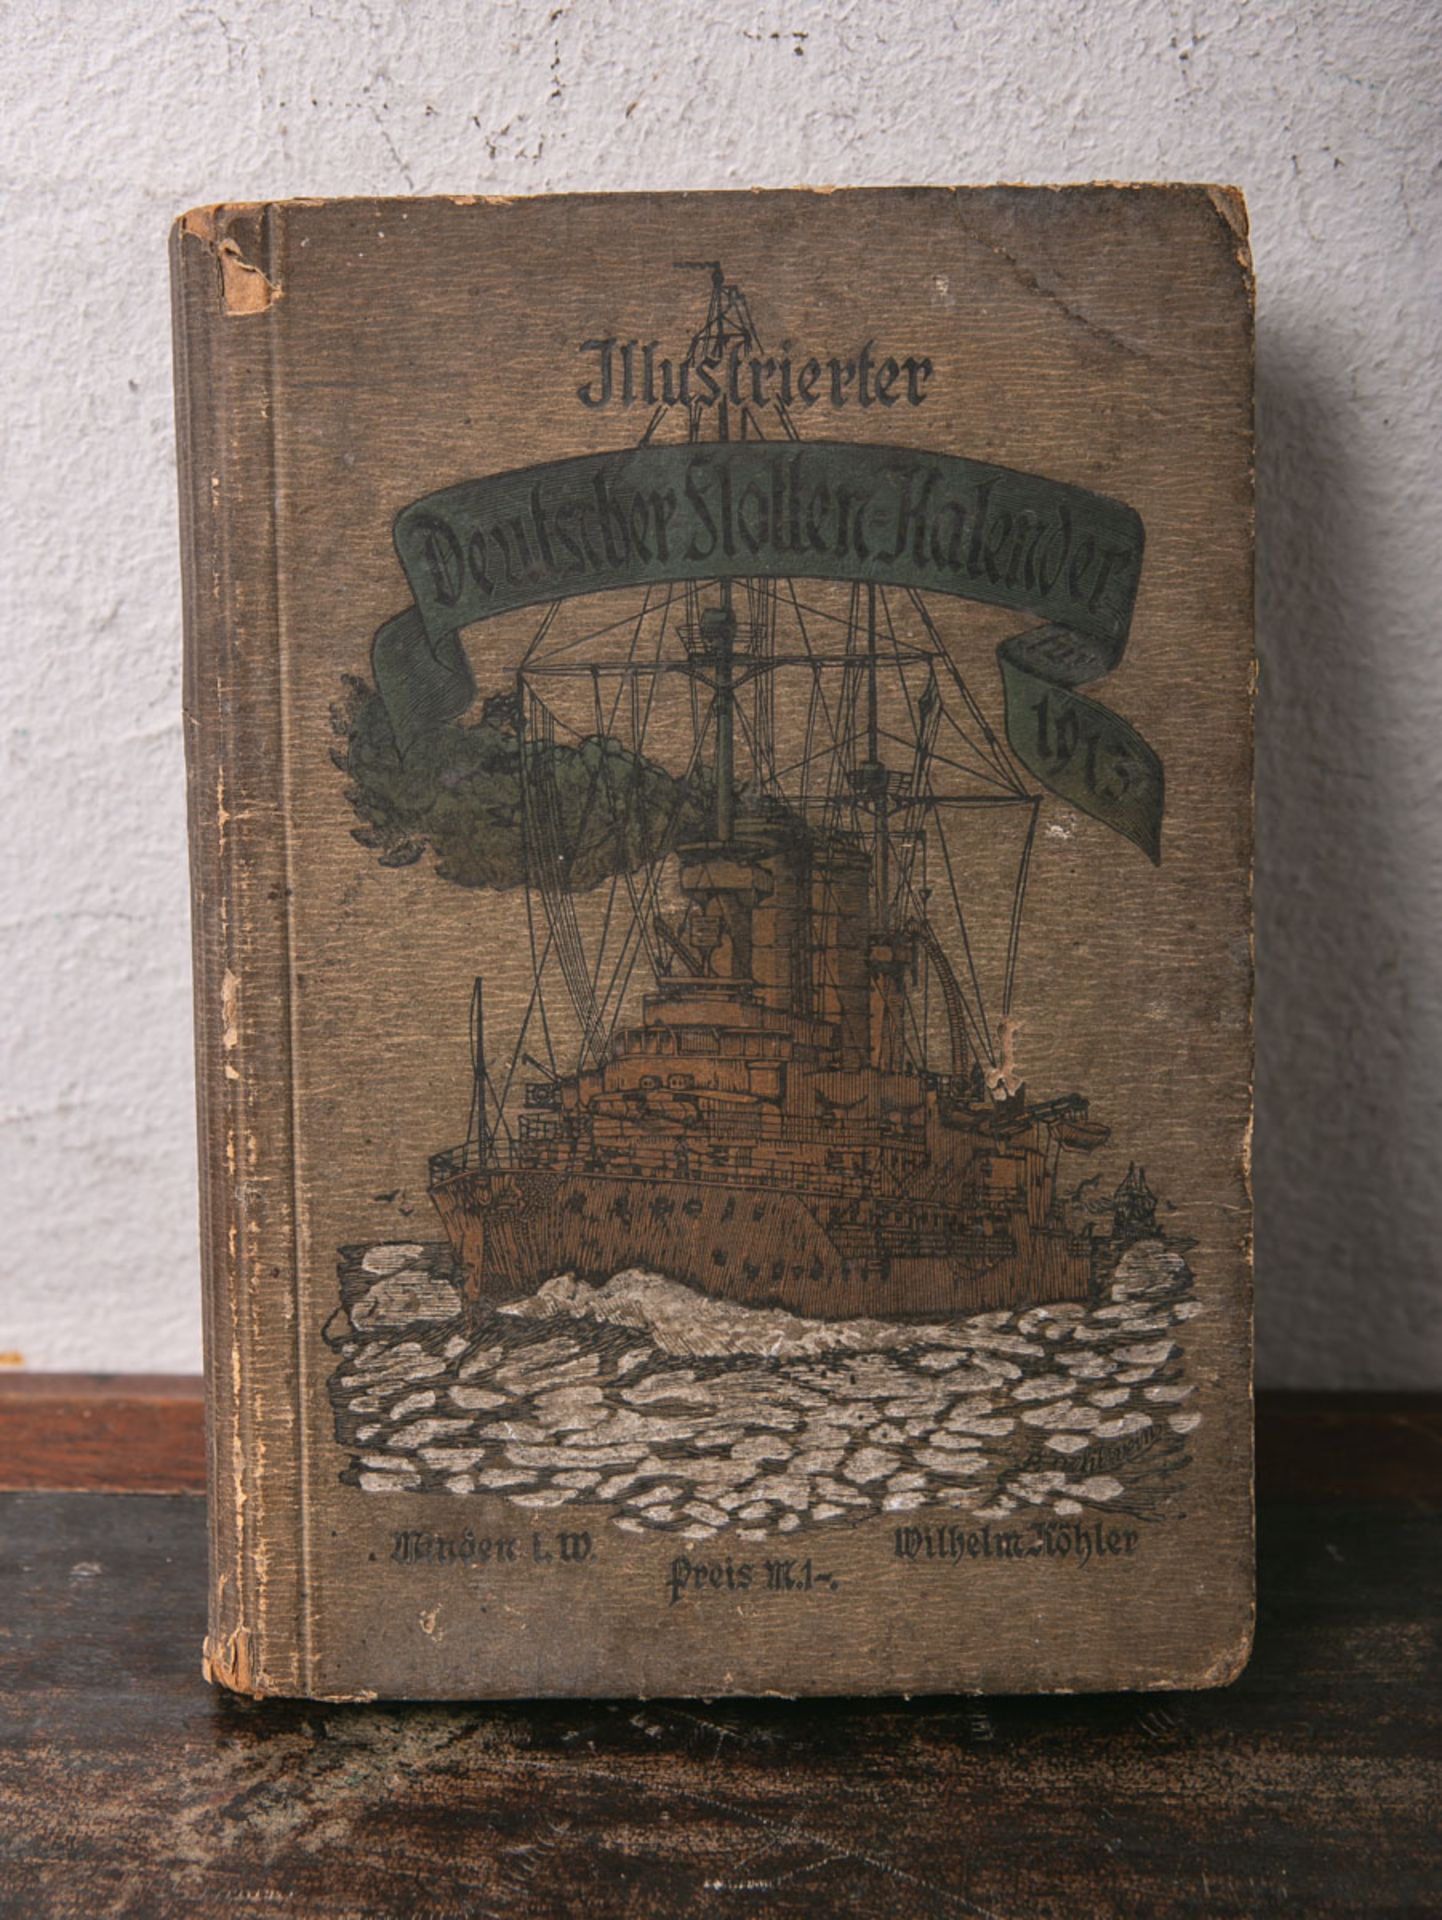 Illustrierter Deutscher Flotten-Kalender für 1913 - 13. Jahrgang - Image 2 of 2